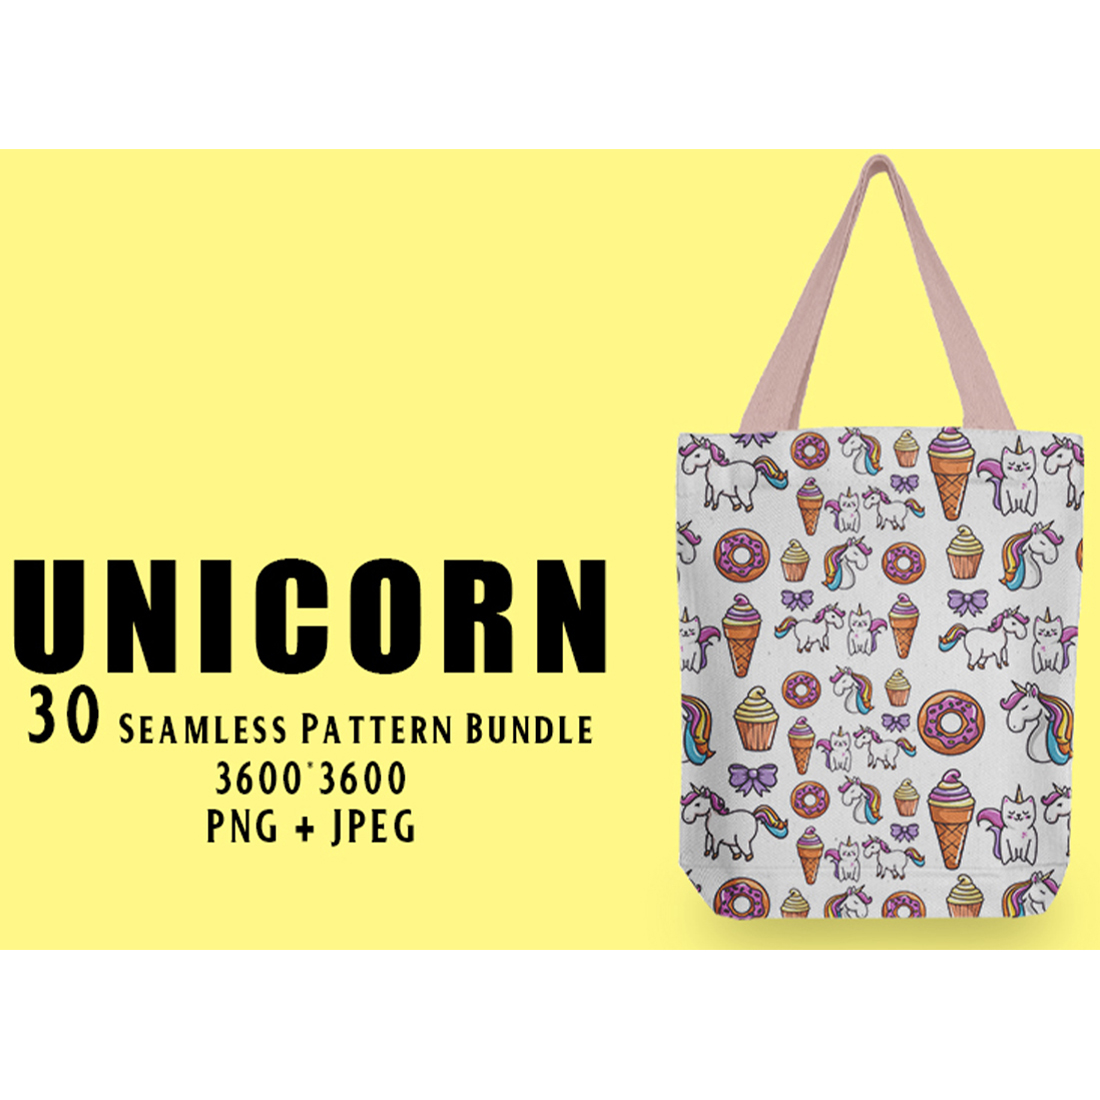 Image of bag with amazing unicorn patterns